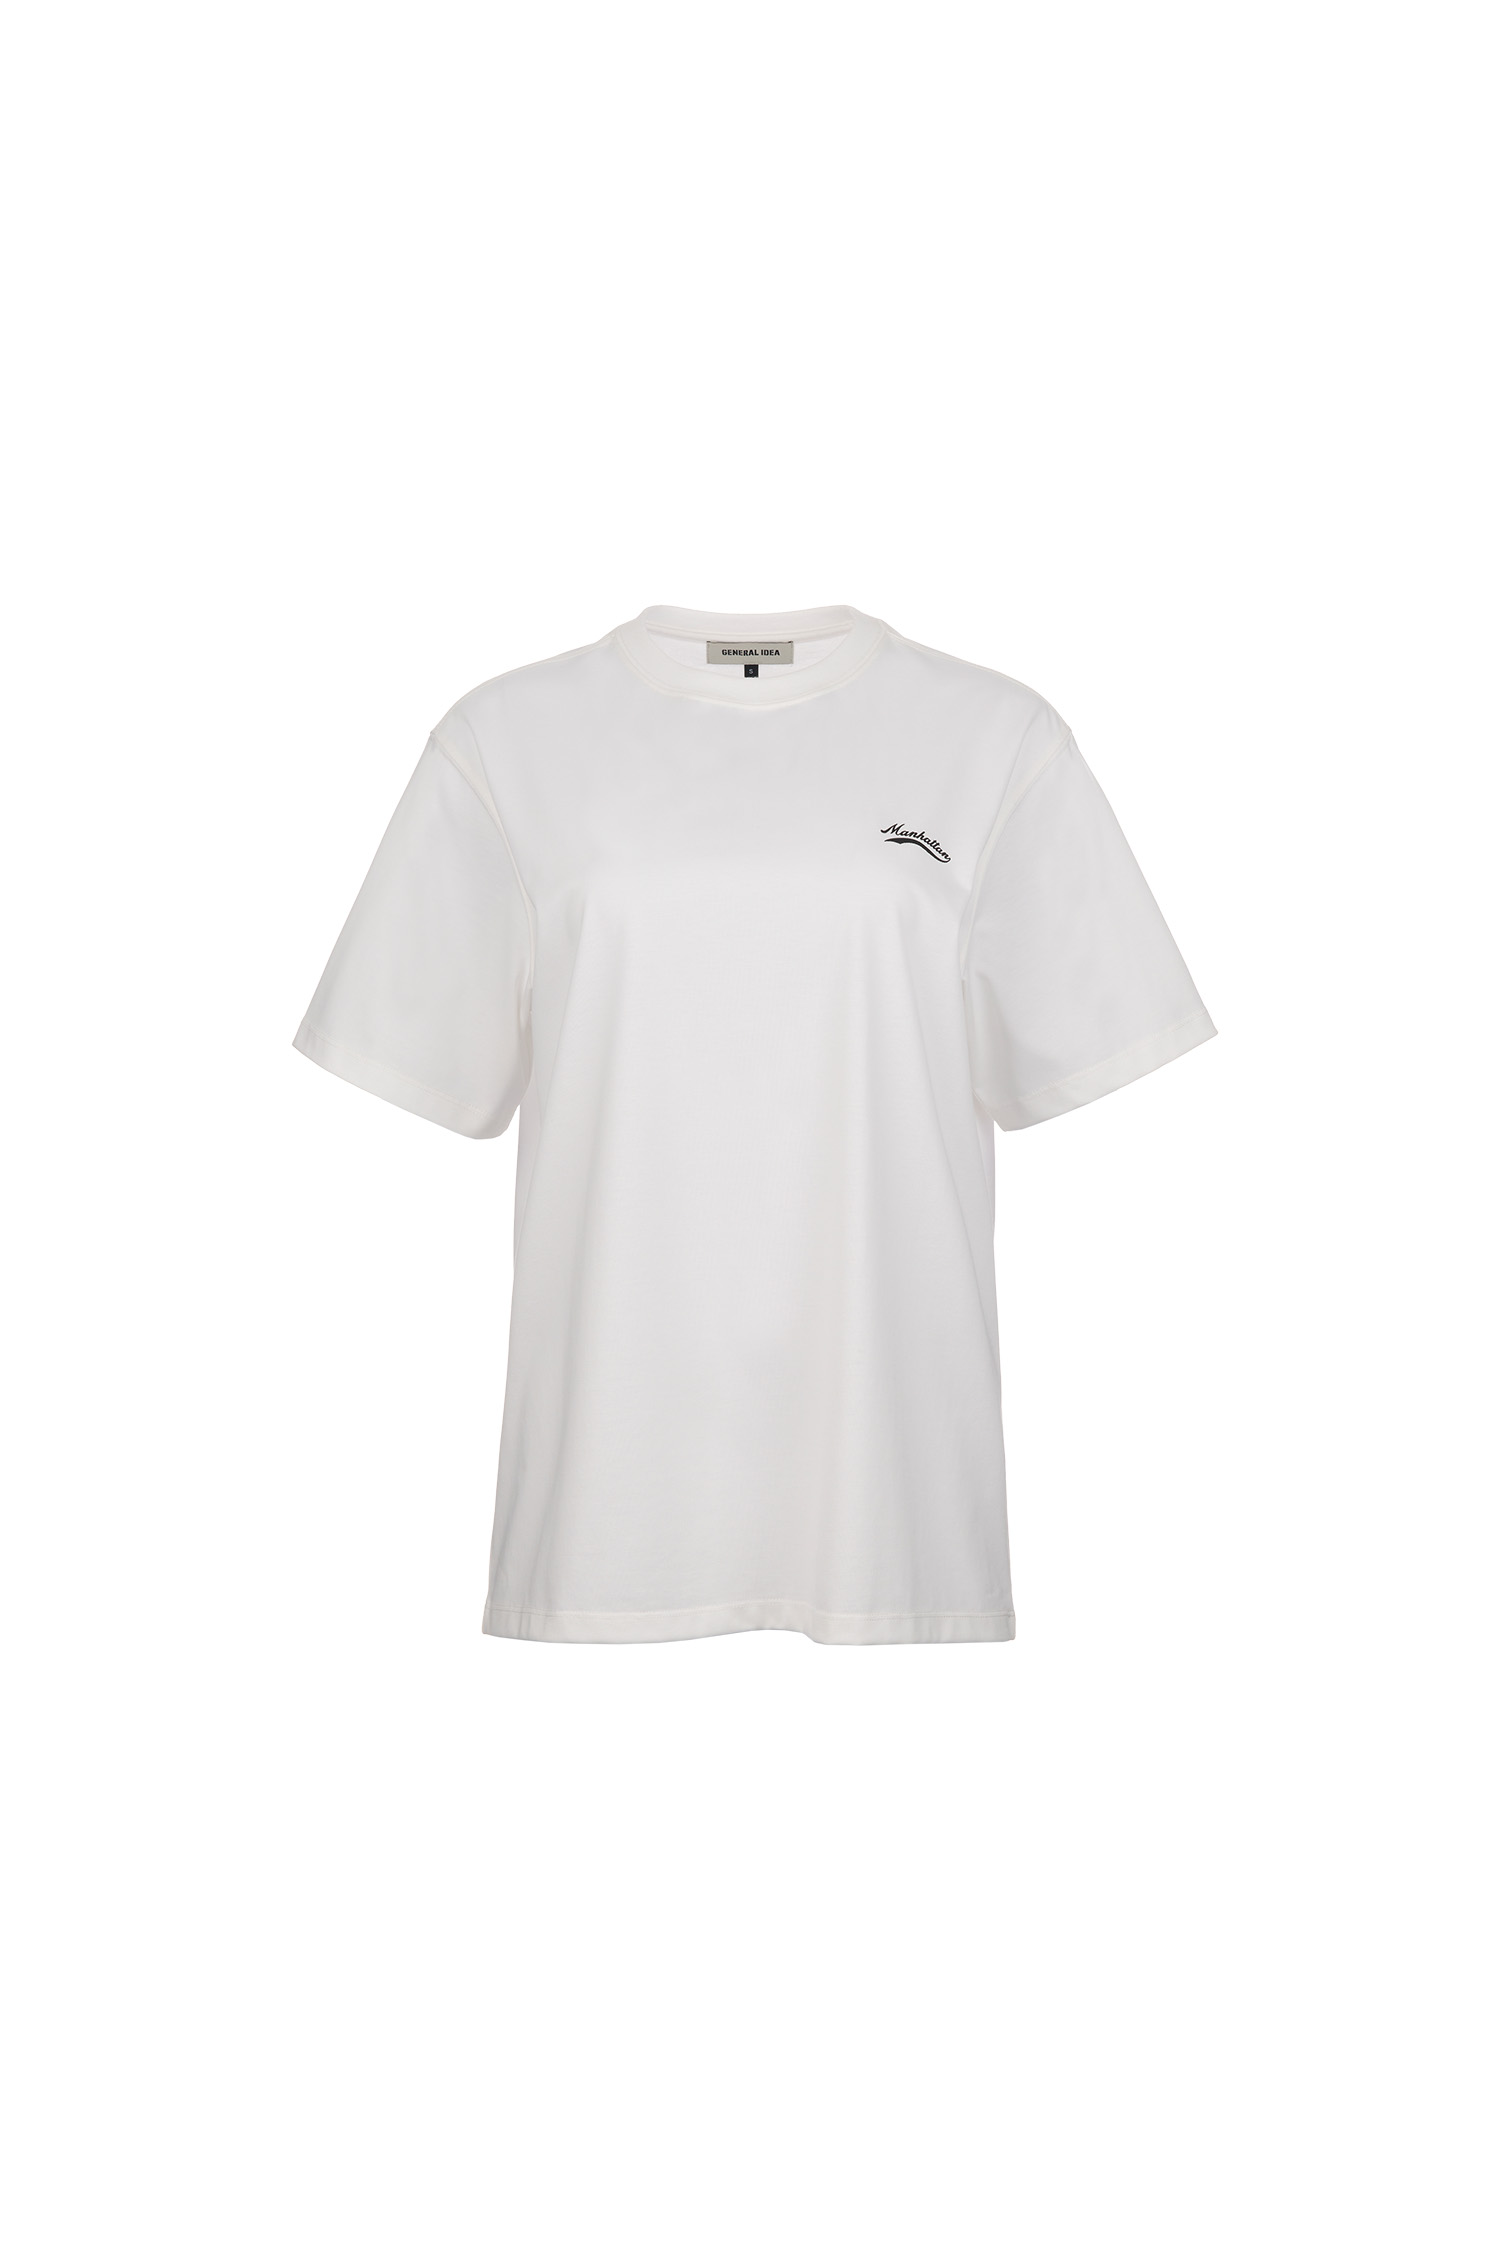 UNISEX マンハッタン半袖Tシャツ [WHITE]